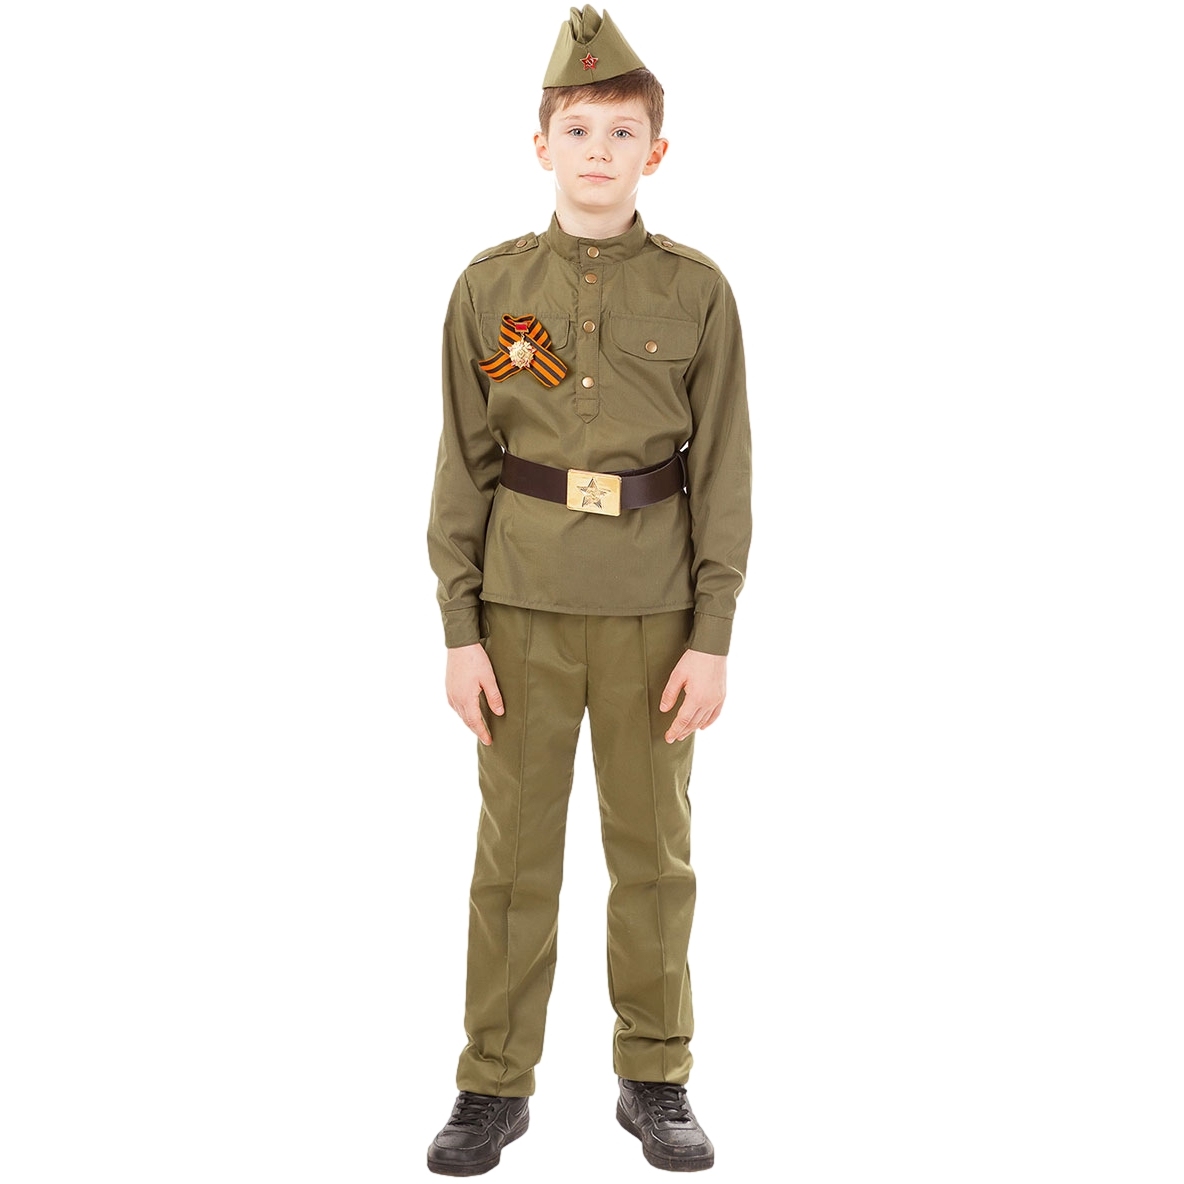 Карнавальный костюм "Солдат" (гимнастерка,брюки,пилотка,ремень,георгиевская лента) р. 134-34